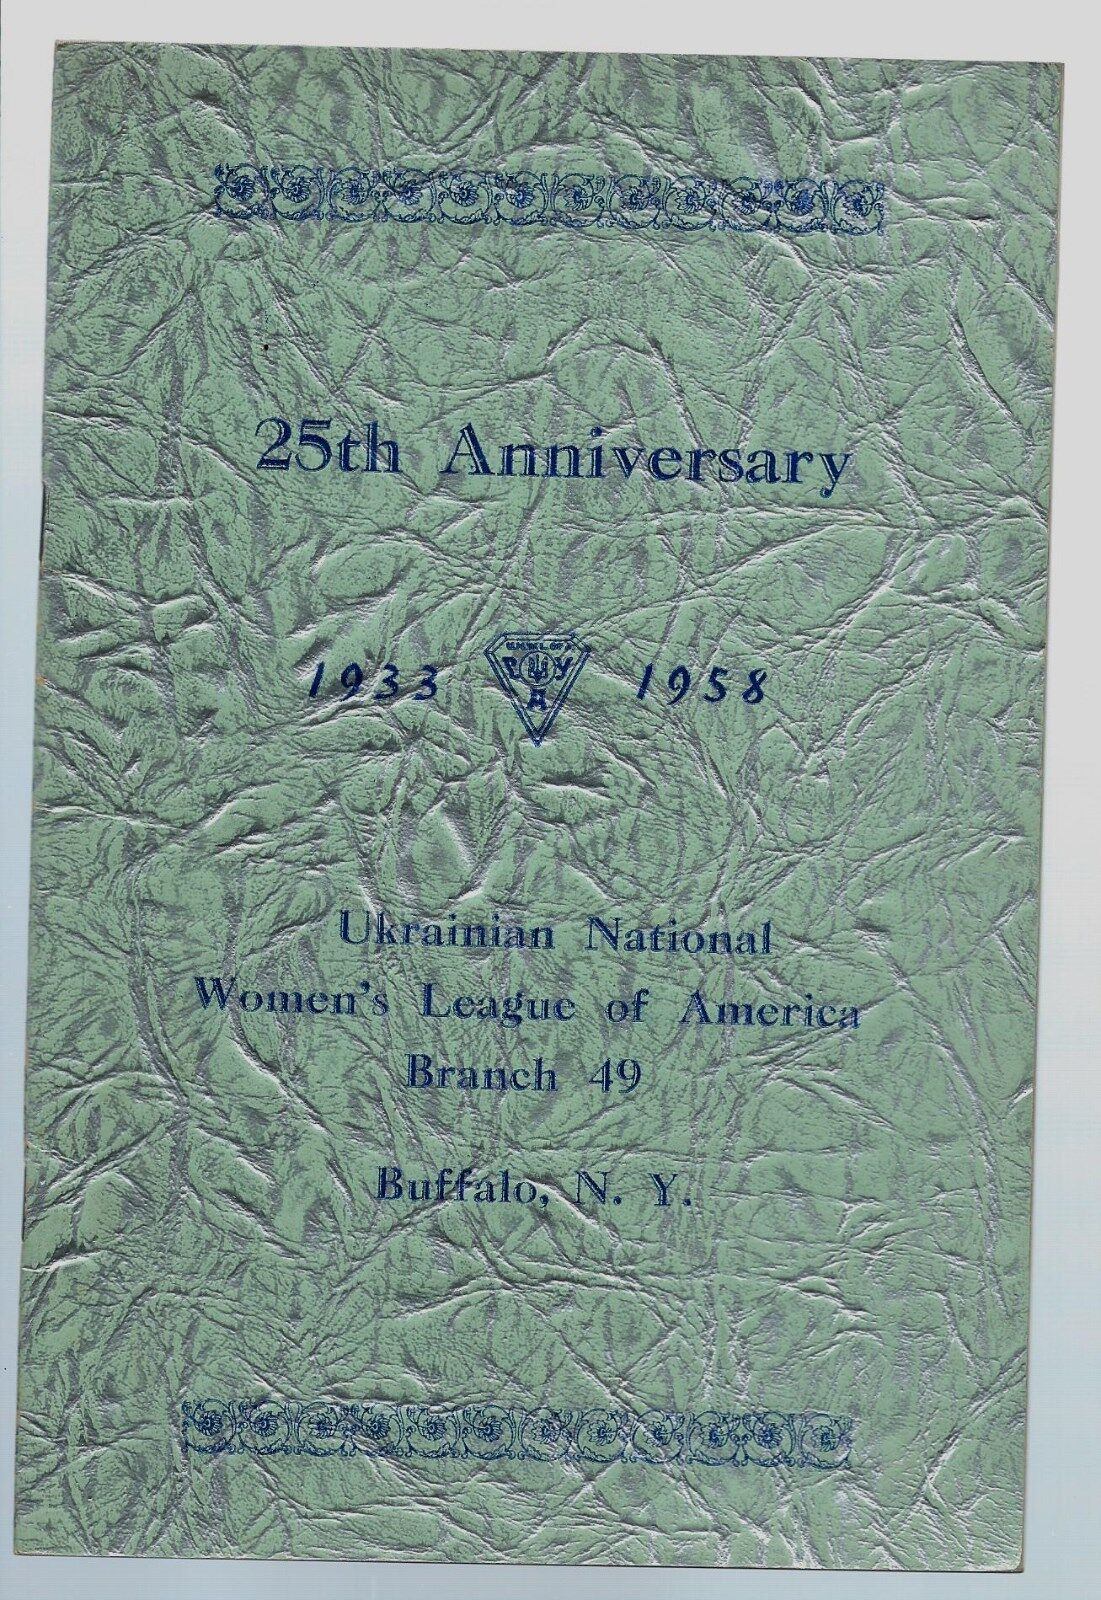 1933-1958 Ukrainian National Women\'s League of America Buffalo NY Program